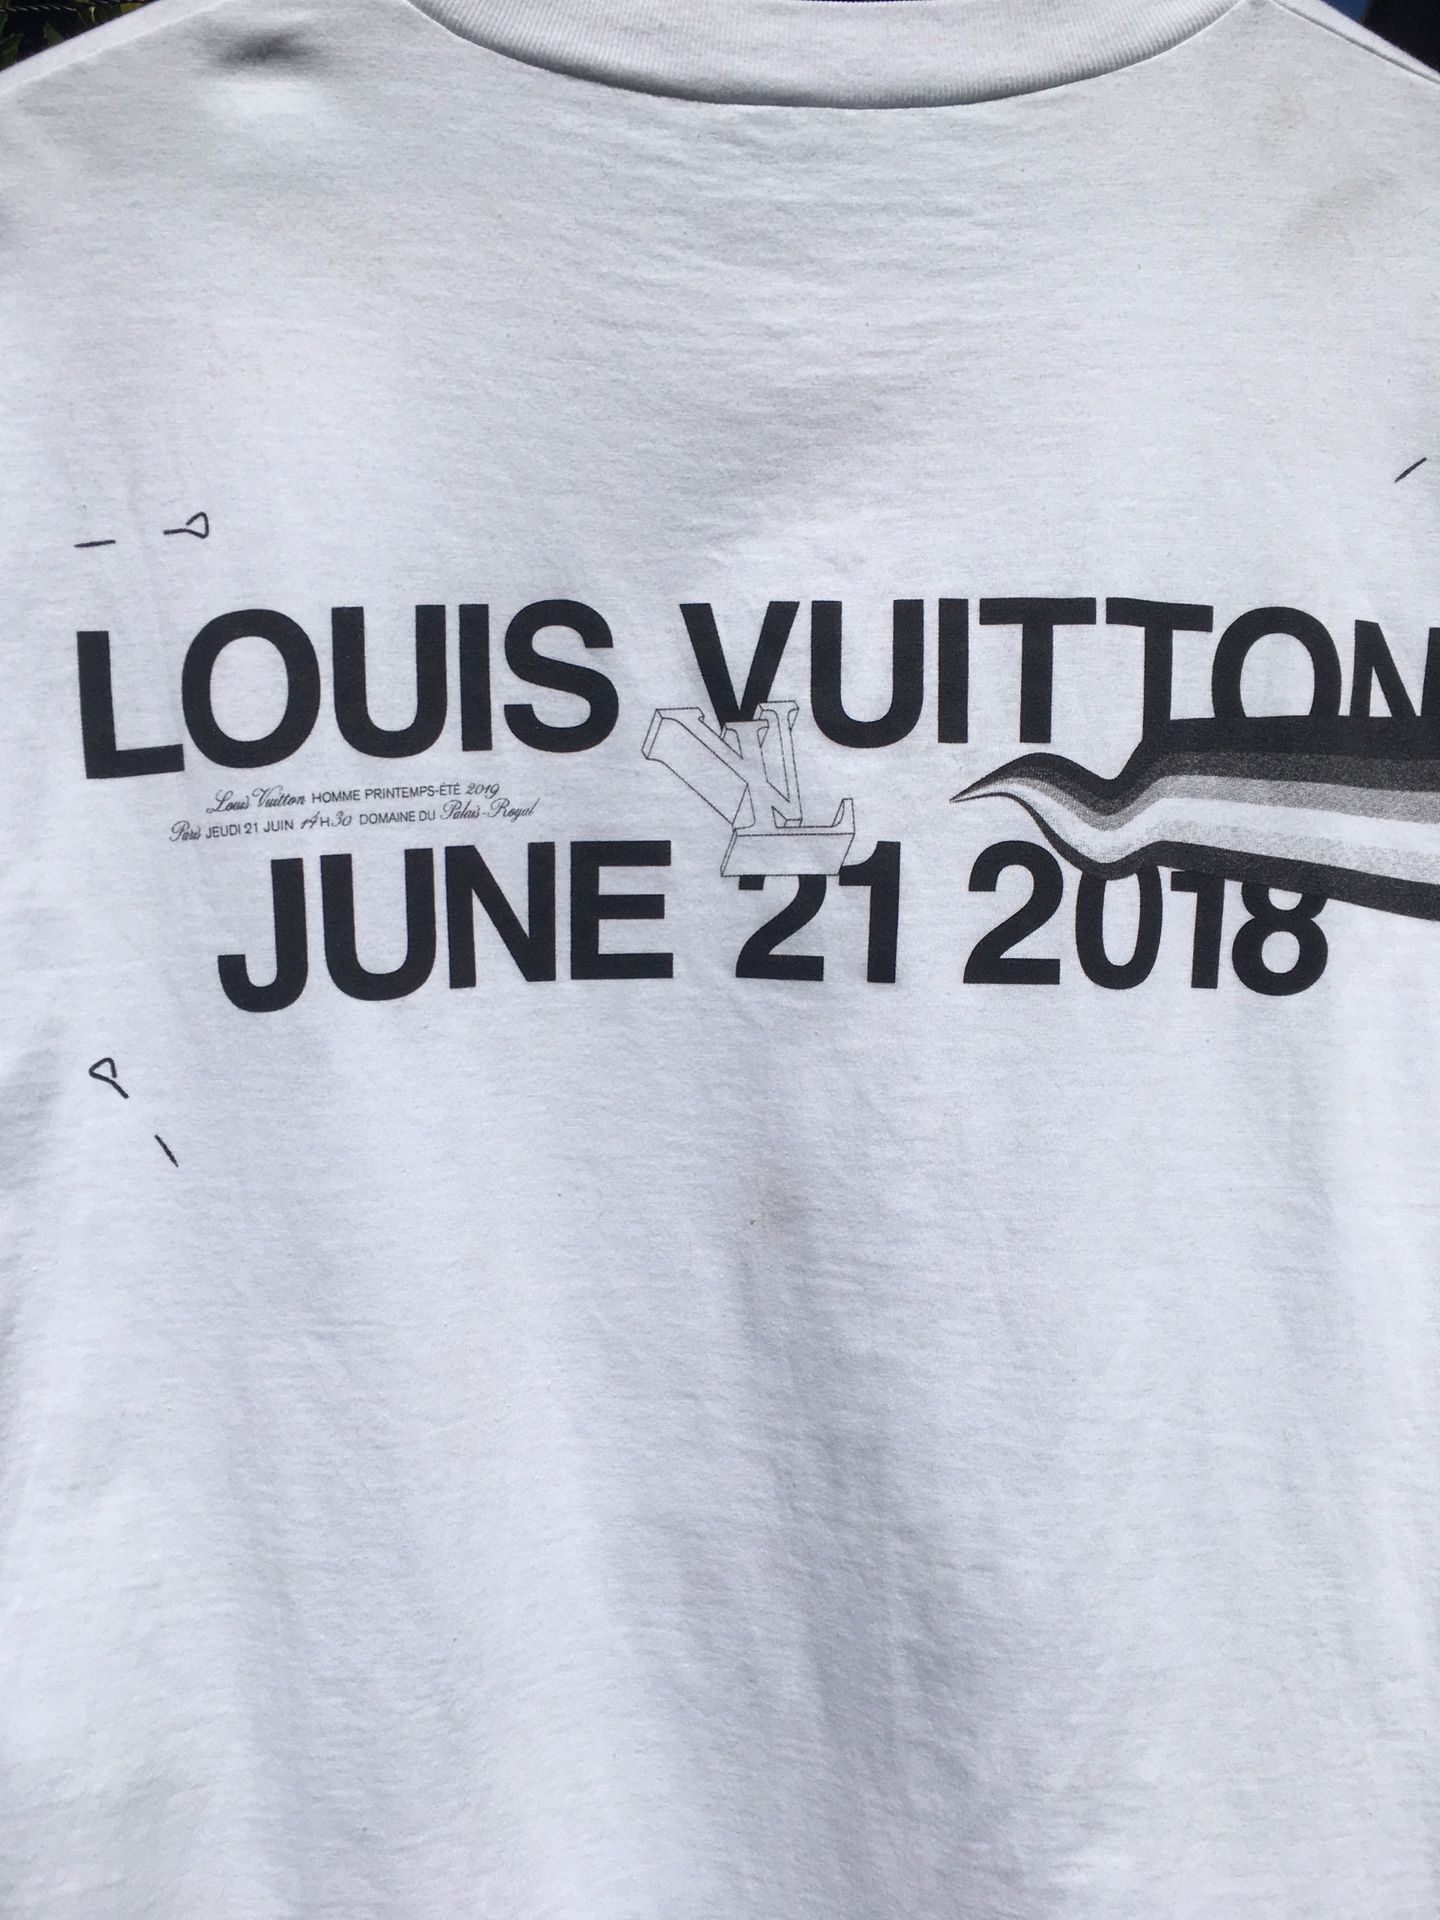 Louis Vuitton T-shirt for Sale in Colorado Springs, CO - OfferUp  Louis  vuitton t shirt, Louis vuitton shirts, Gucci t shirt women